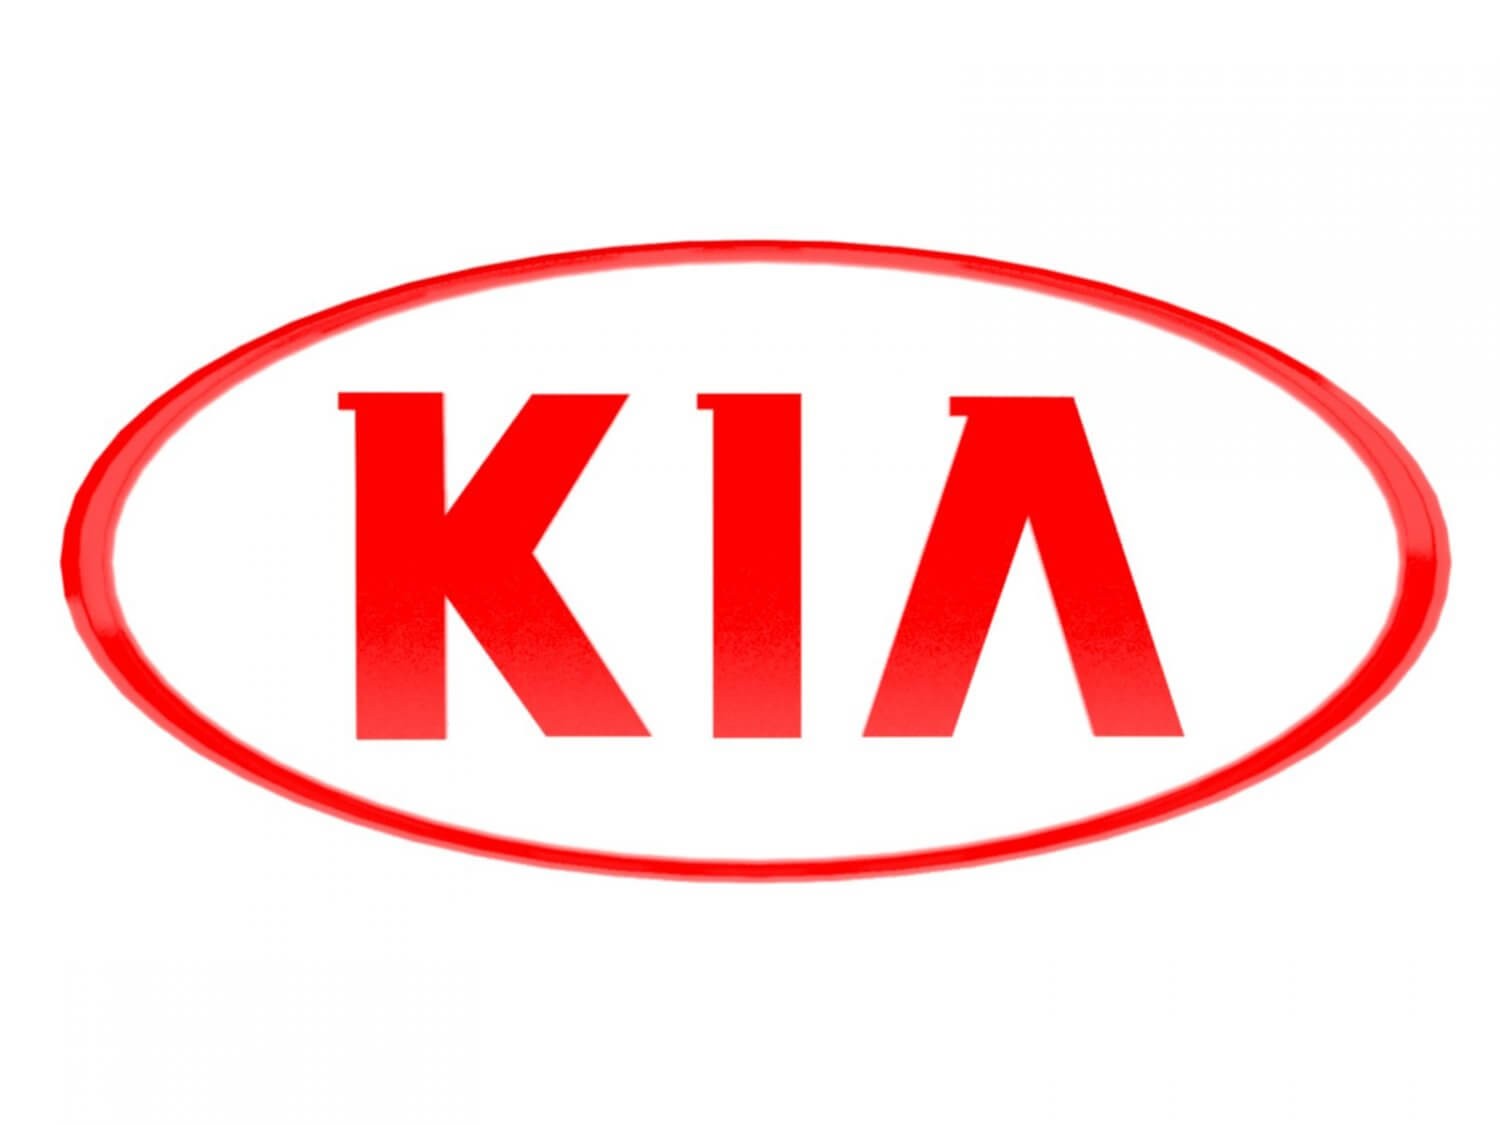 Thương hiệu Kia Hàn Quốc chính thức gia nhập thị trường Việt Nam vào ngày 4 tháng 4 năm 2007 thông qua thỏa thuận hợp tác giữa Trường Hải Group và Kia Motors (Hàn Quốc)